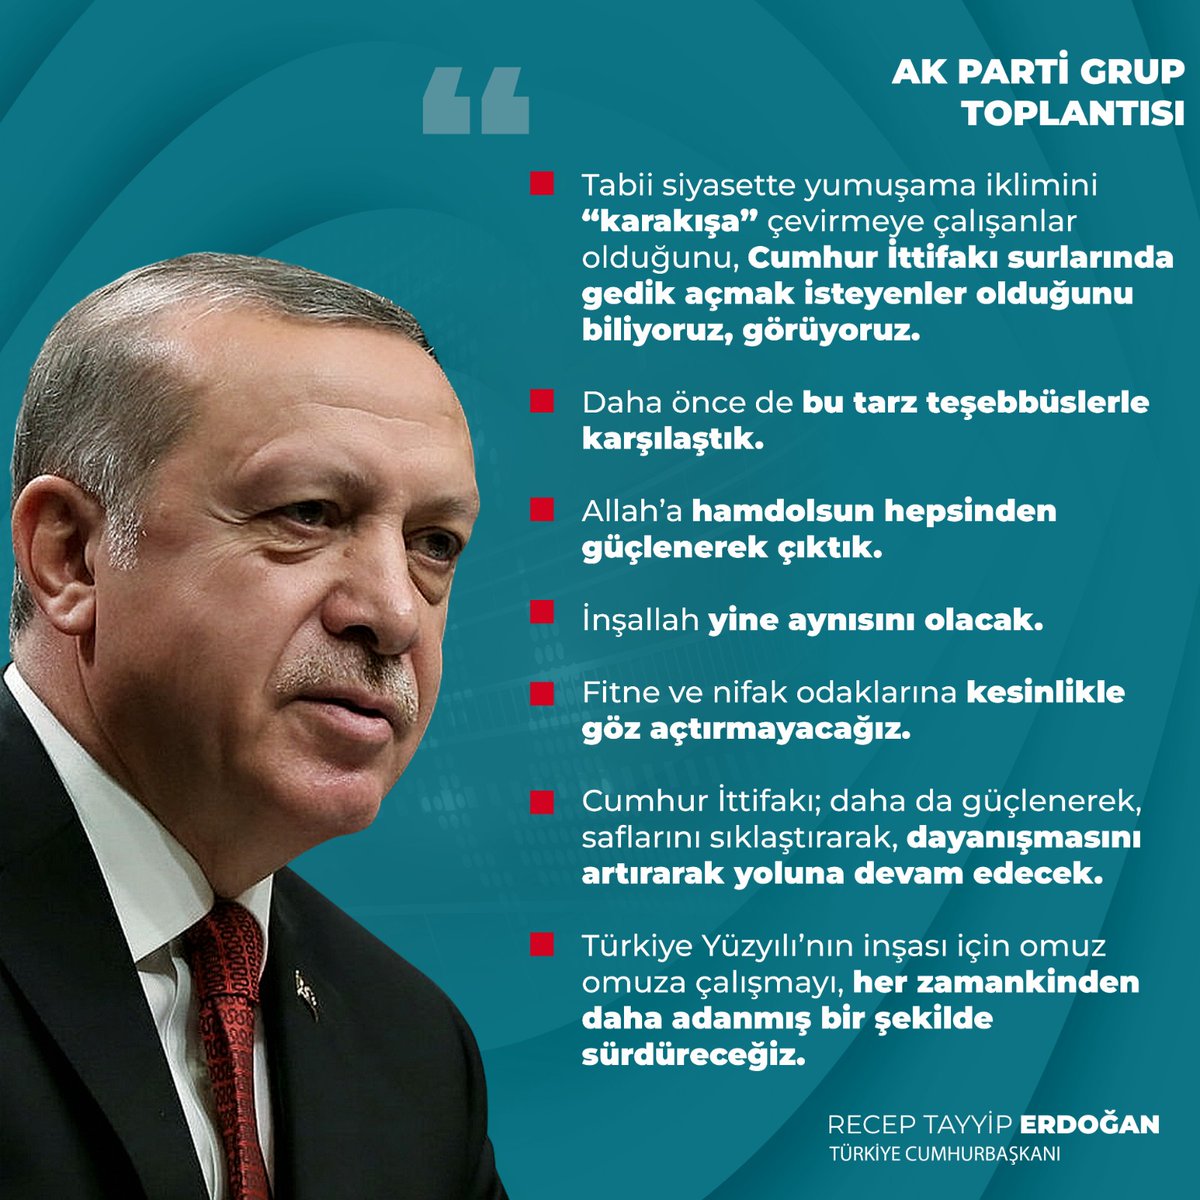 Cumhurbaşkanımız Recep Tayyip Erdoğan: 'Tabii siyasette yumuşama iklimini 'karakışa' çevirmeye çalışanlar olduğunu, Cumhur İttifakı surlarında gedik açmak isteyenler olduğunu biliyoruz. Cumhur İttifakı; daha da güçlenerek, dayanışmasını artırarak yoluna devam edecek.'